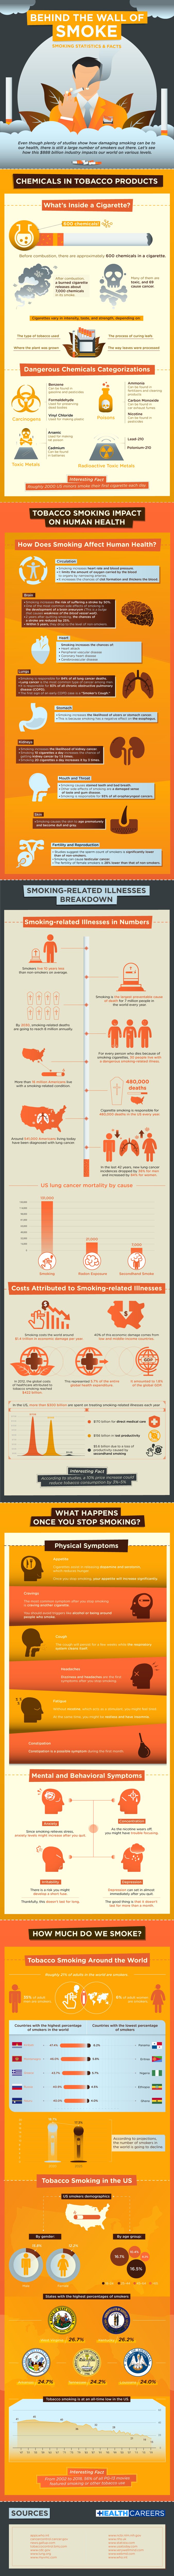 Disturbing Smoking Statistics To Make You Quit